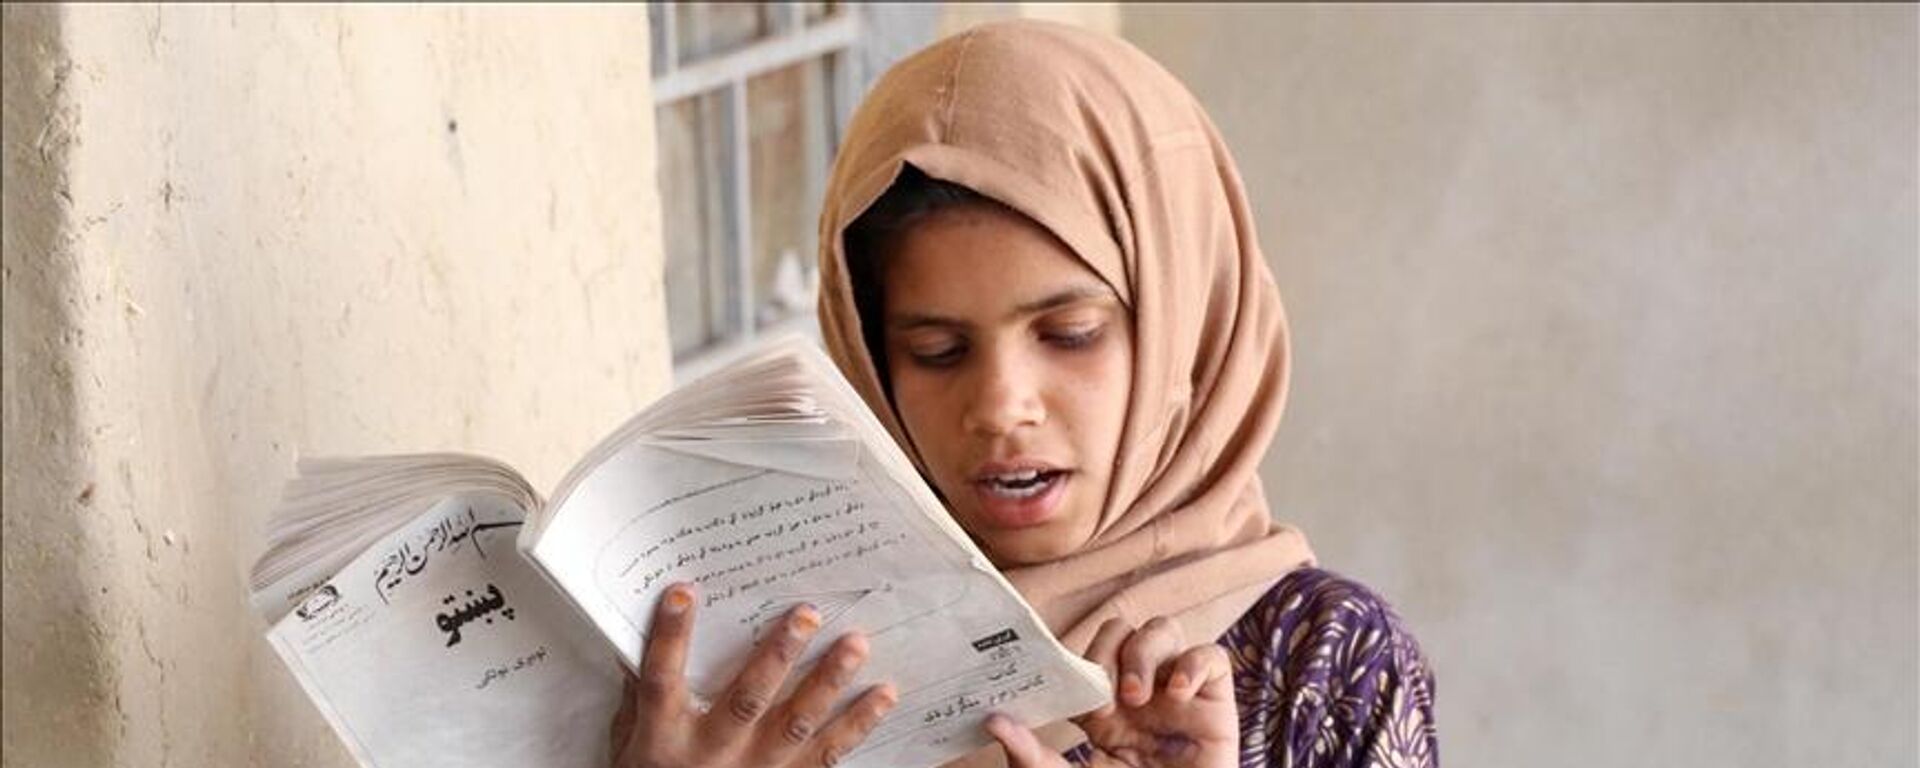 Birleşmiş Milletler (BM) İnsan Hakları Yüksek Komiseri Michelle Bachelet, Afganistan'da 1.2 milyon ortaokul öğrencisi kızın, Taliban'ın yönetimi devralmasından bu yana okullarına devam edemediğini bildirdi. - Sputnik Türkiye, 1920, 01.07.2022